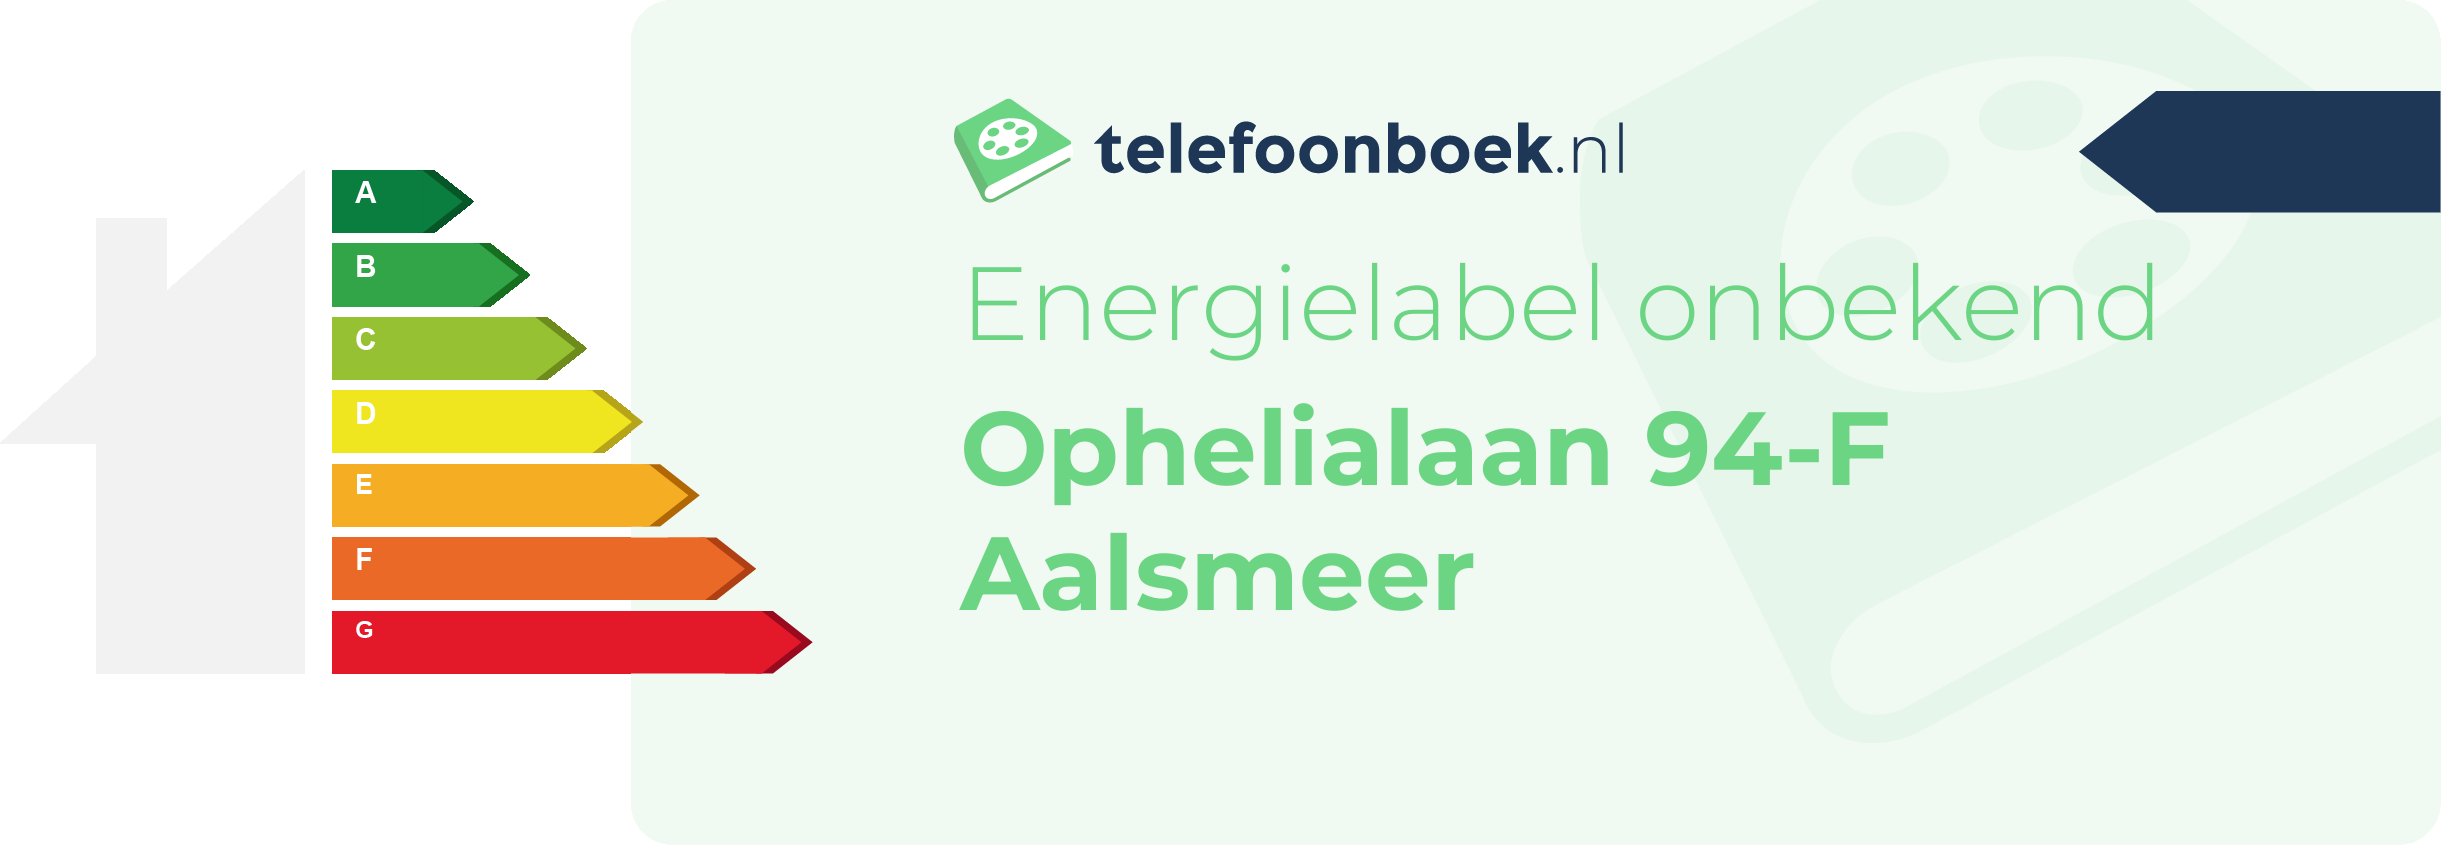 Energielabel Ophelialaan 94-F Aalsmeer